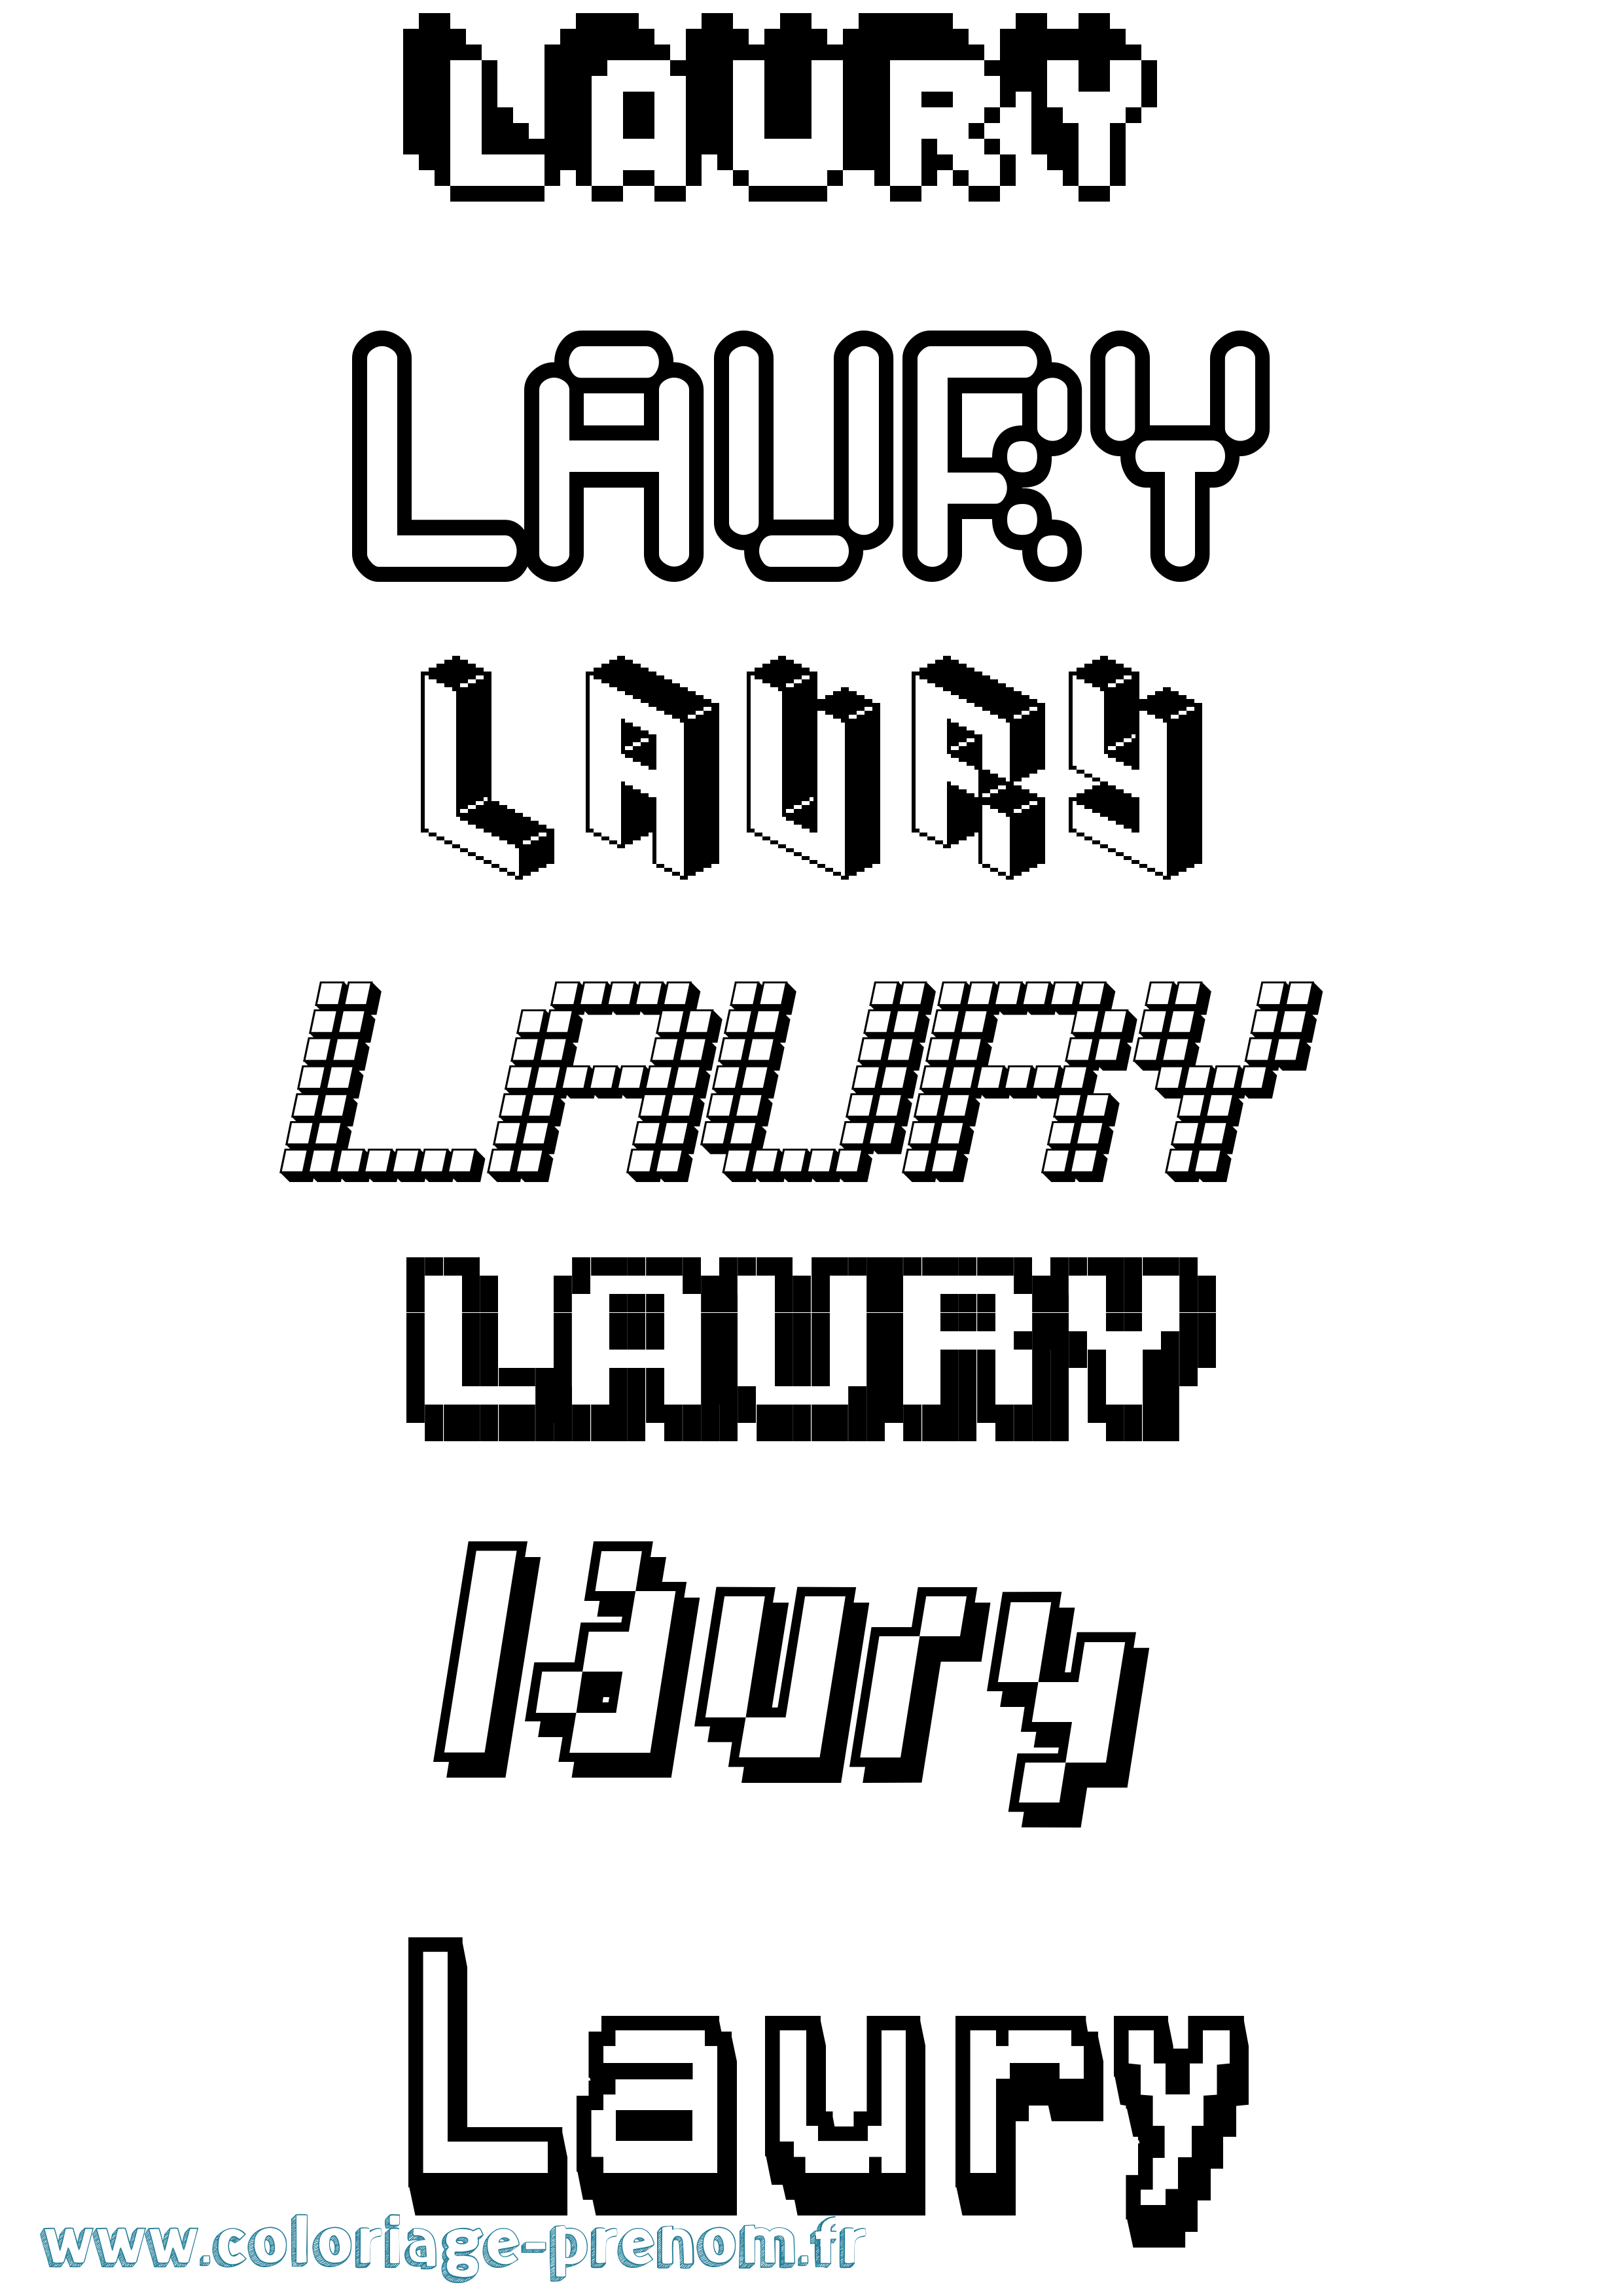 Coloriage prénom Laury Pixel